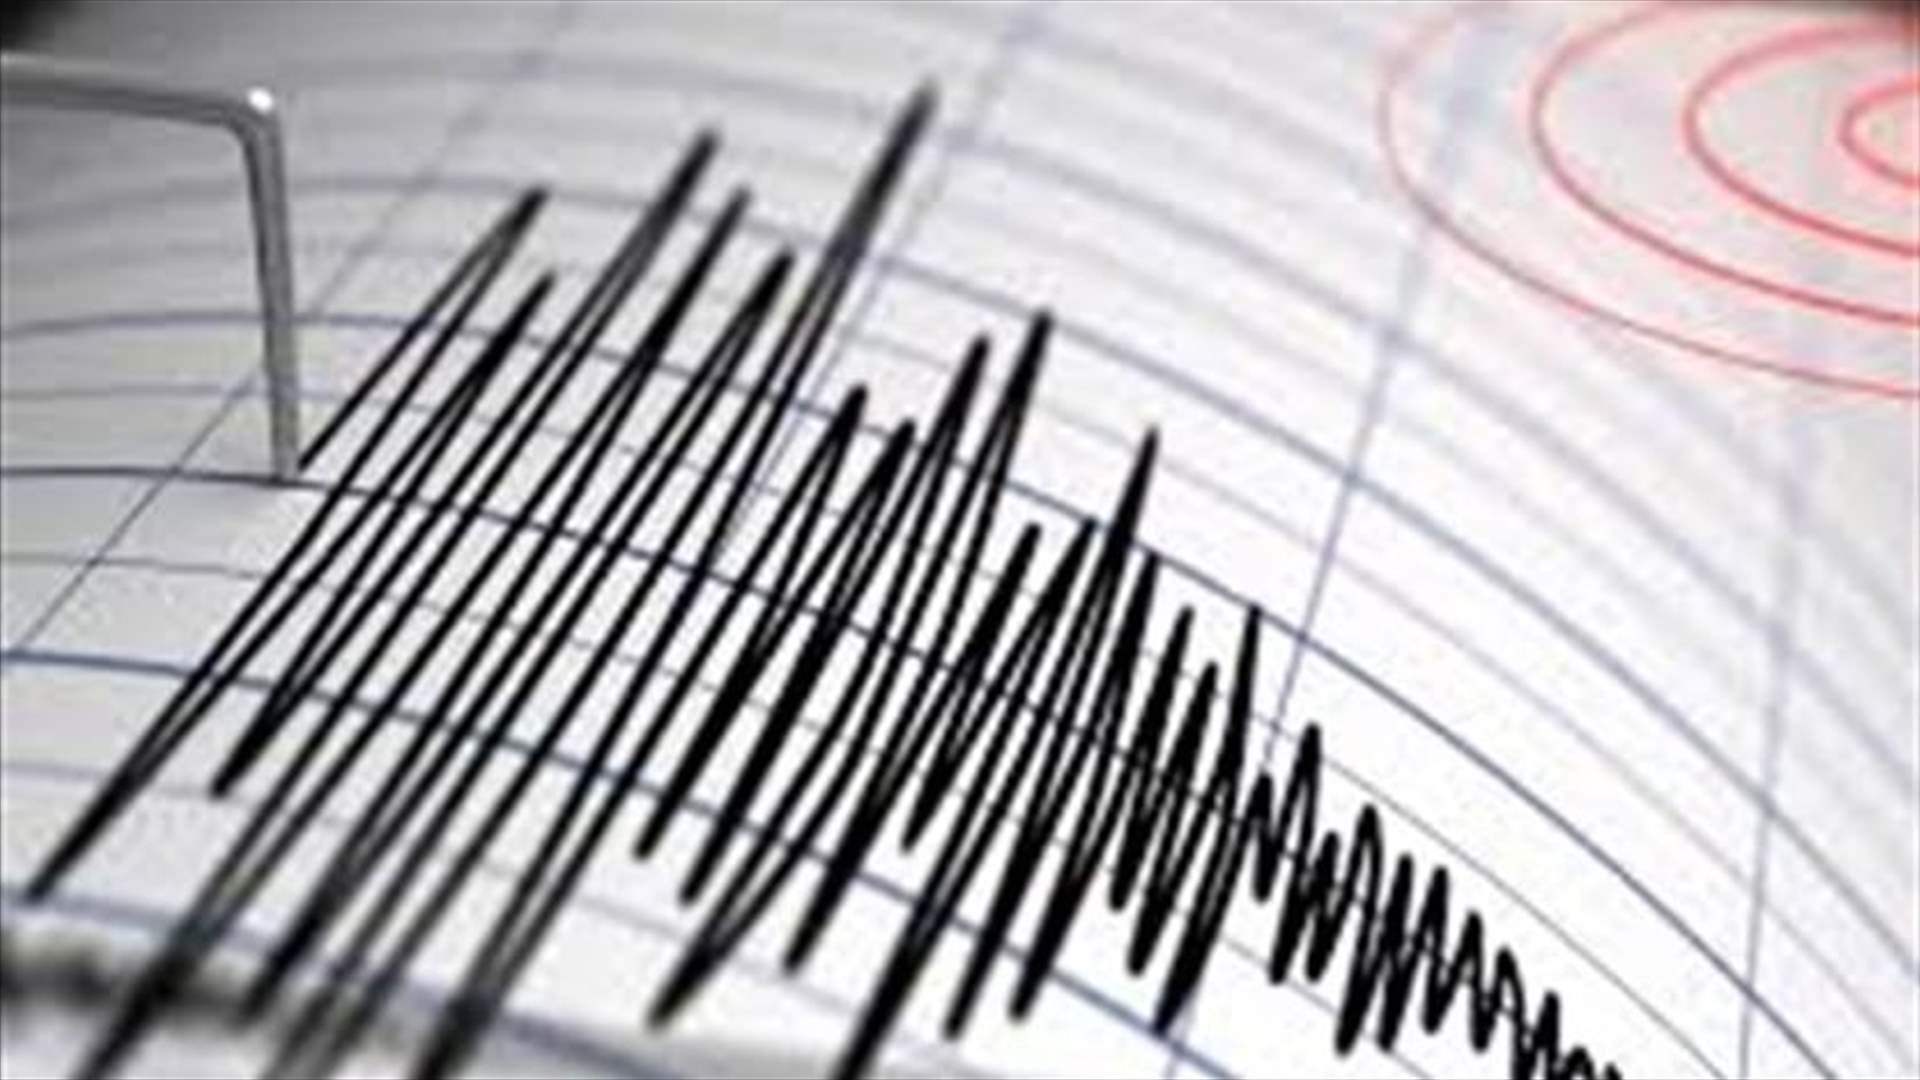 زلزال بقوة 6.2 درجات يقع بالقرب من غواتيمالا